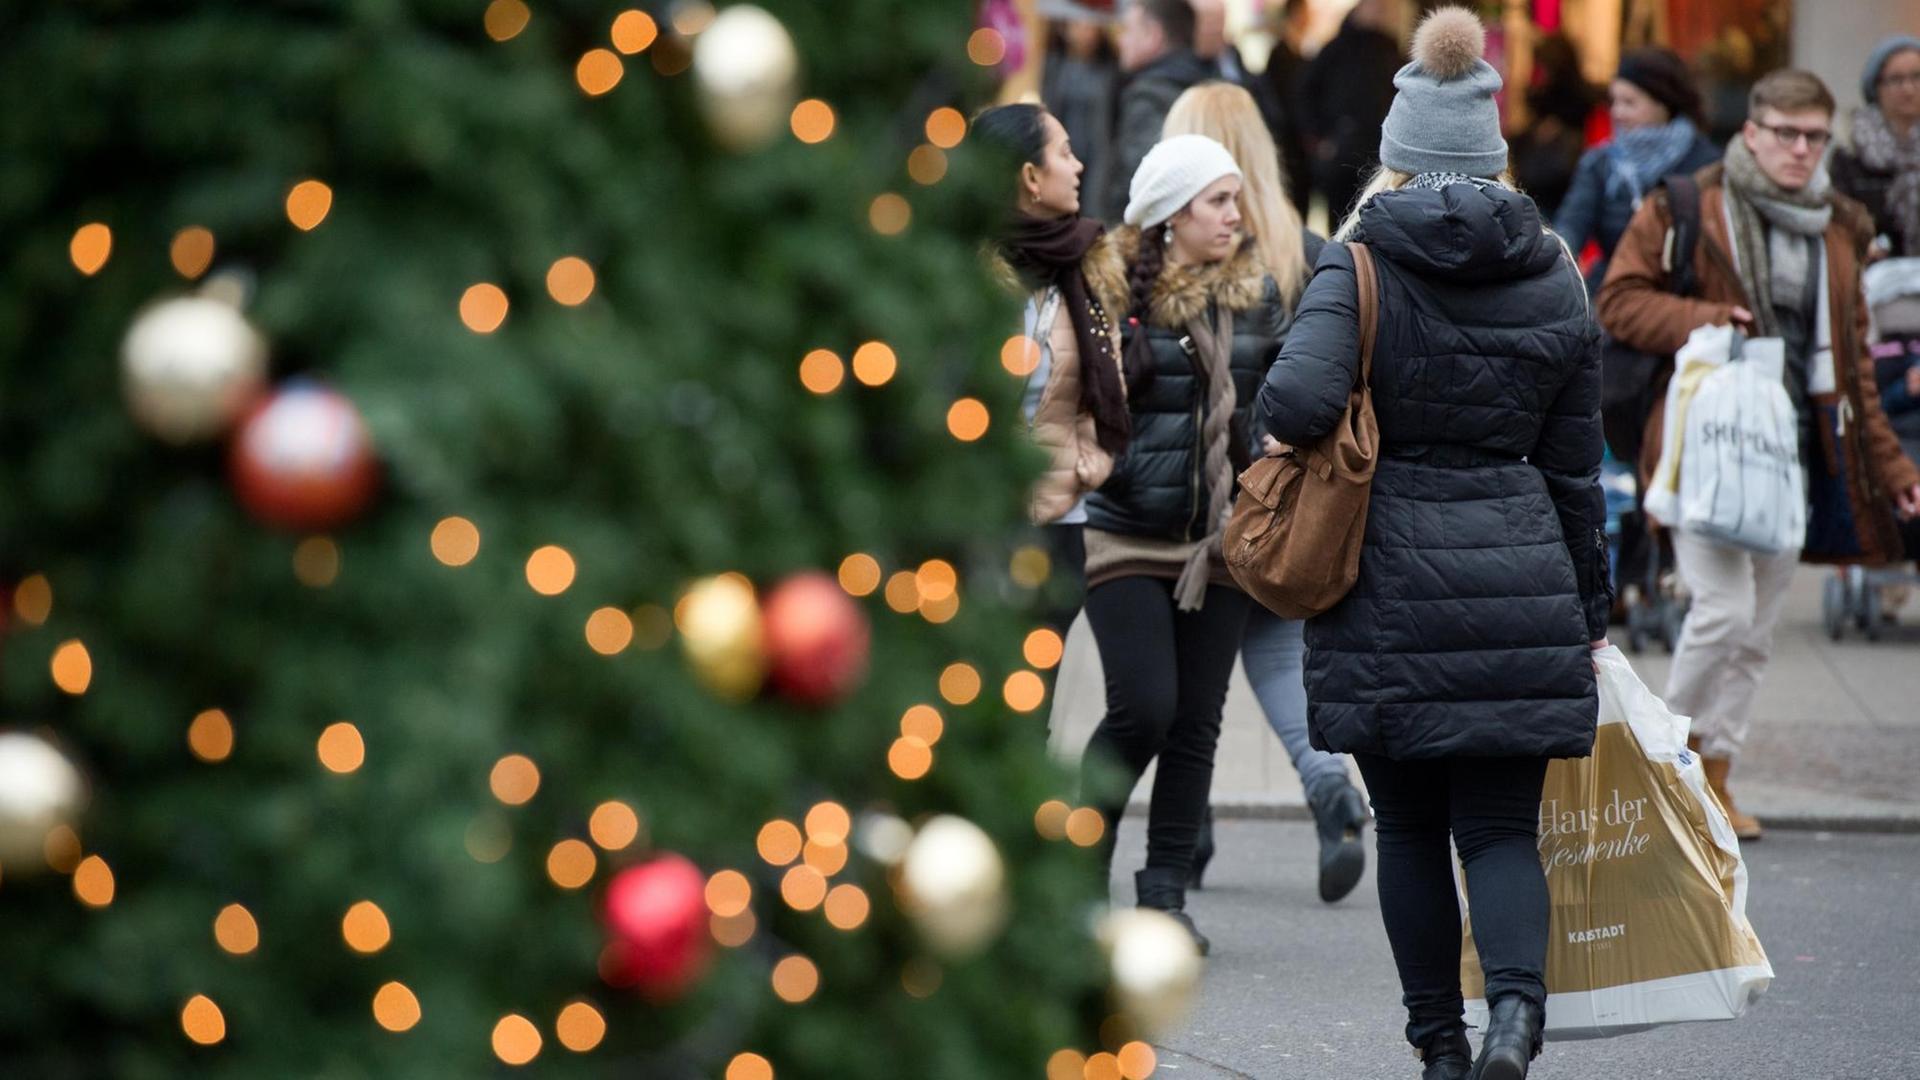 Links im Vordergrund ein Weihnachtsbaum neben dem eine Frau mit einer Einkaufstüte entlanggeht.